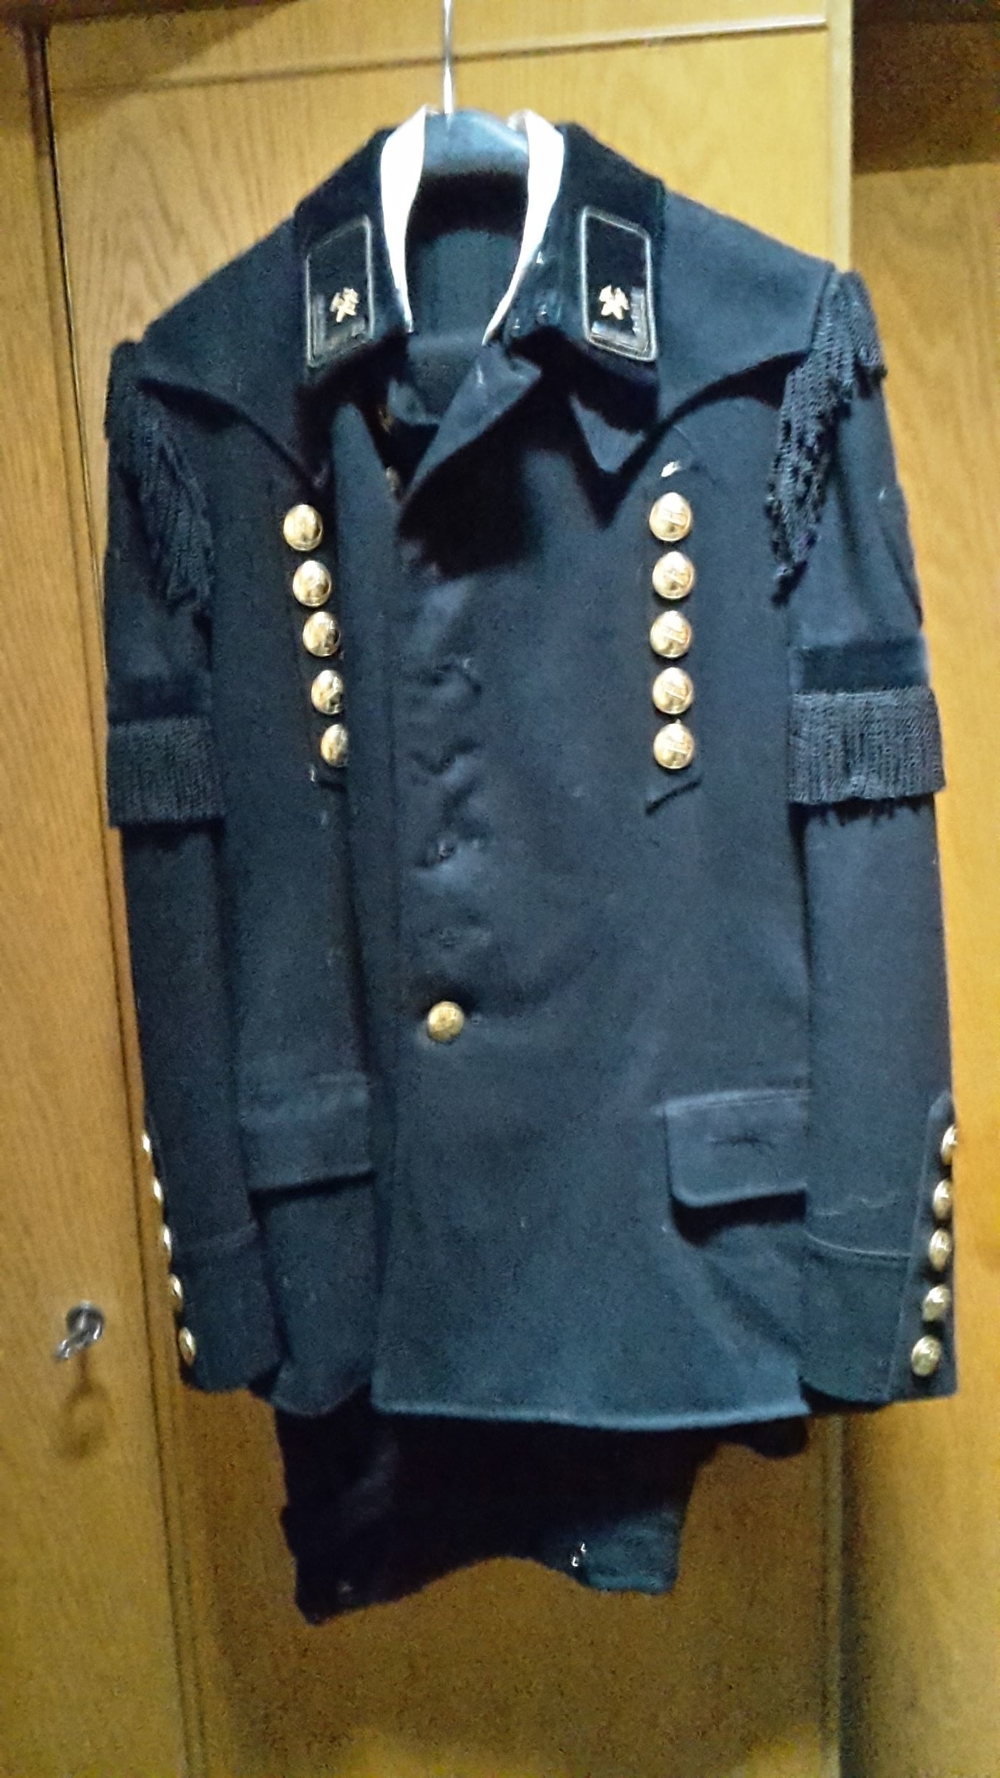 Bergmann Steiger Uniform